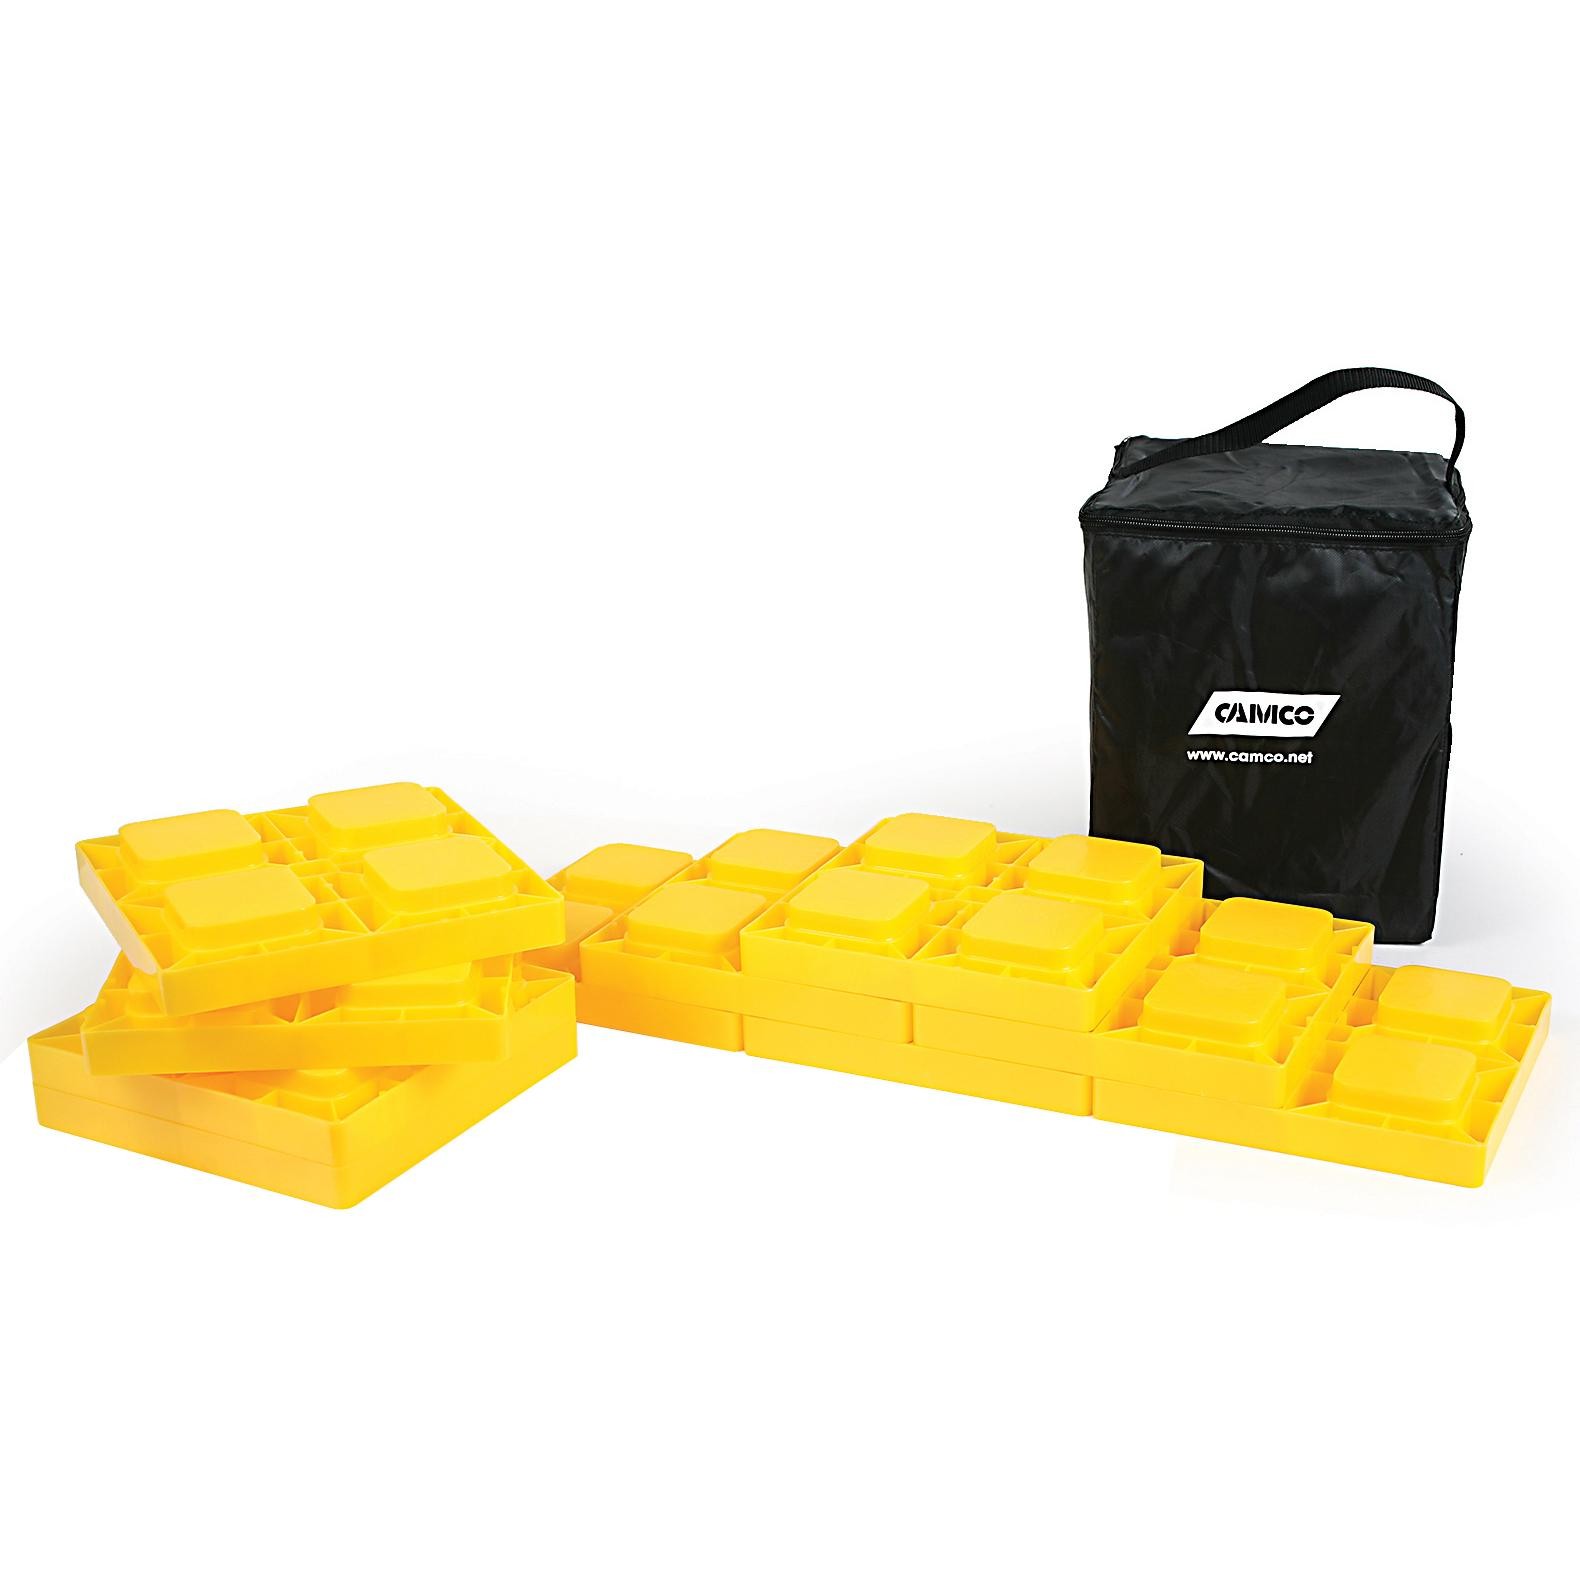 Leveling Blocks - 10 Pack